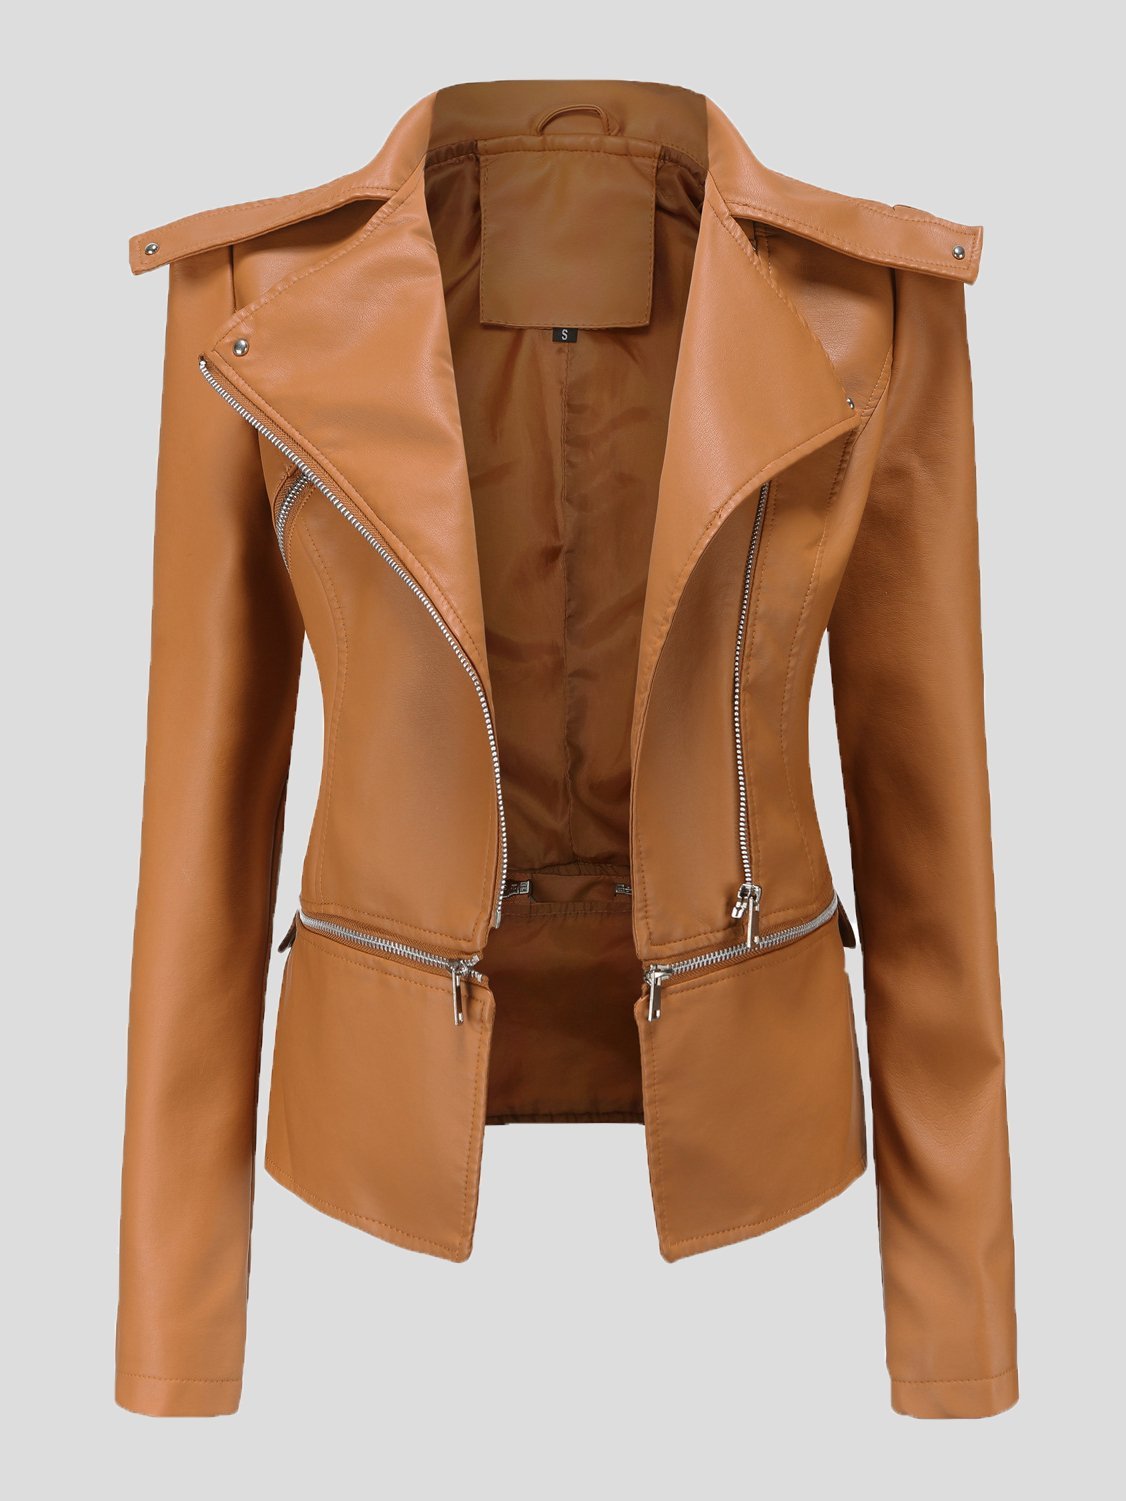 Detachable Hem Long Sleeve Fashion Leather Jacket